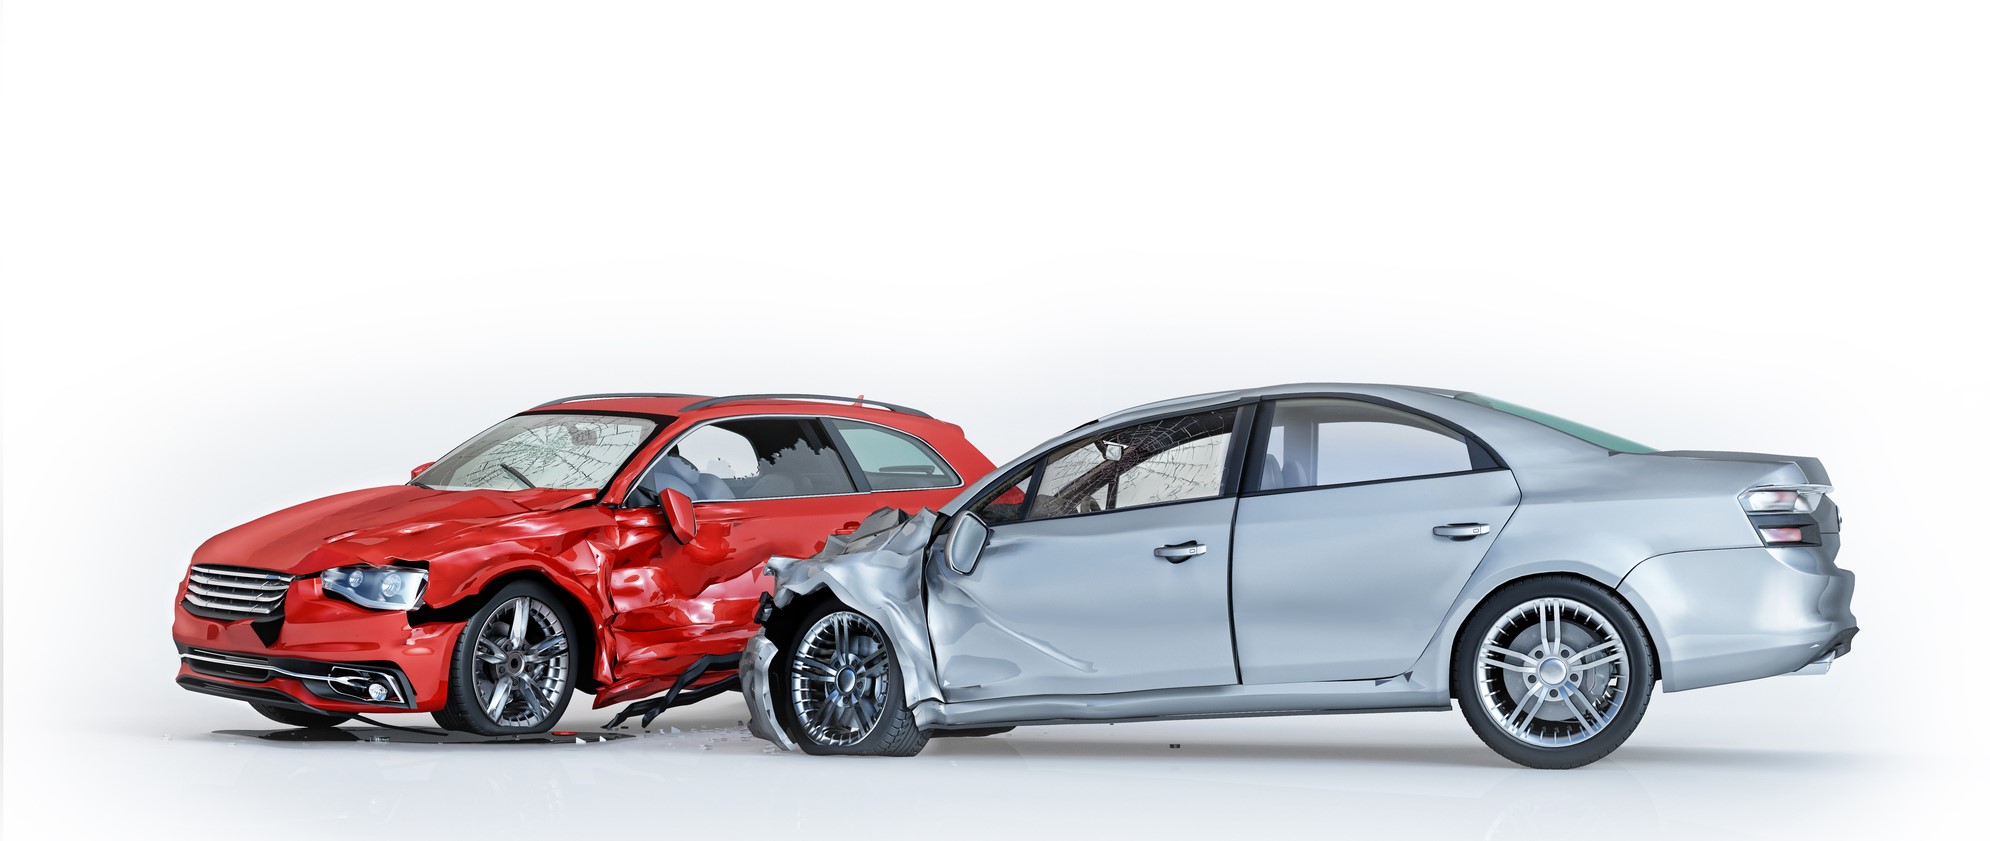 車同士の事故の過失割合を図解 高速道路や駐車場の事故も網羅